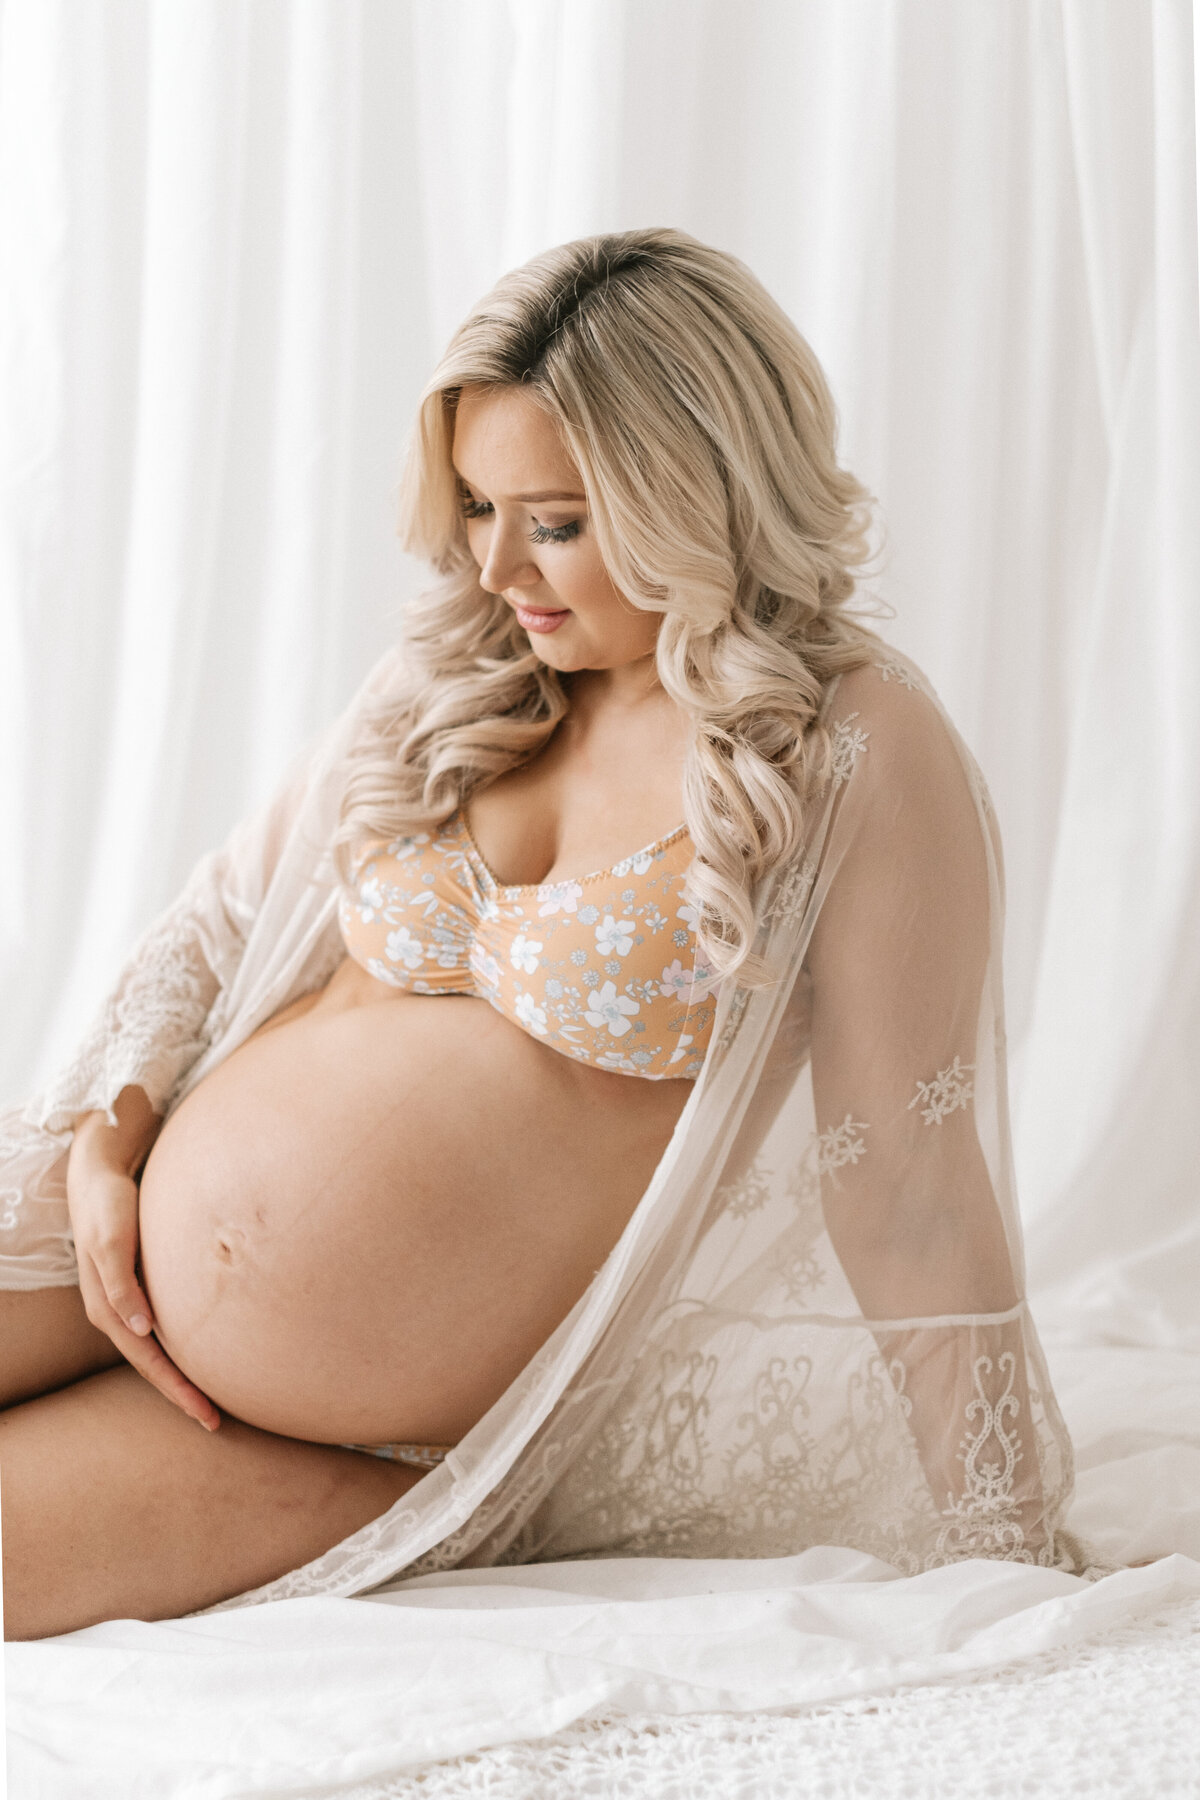 Corrin Reilly Maternity 17